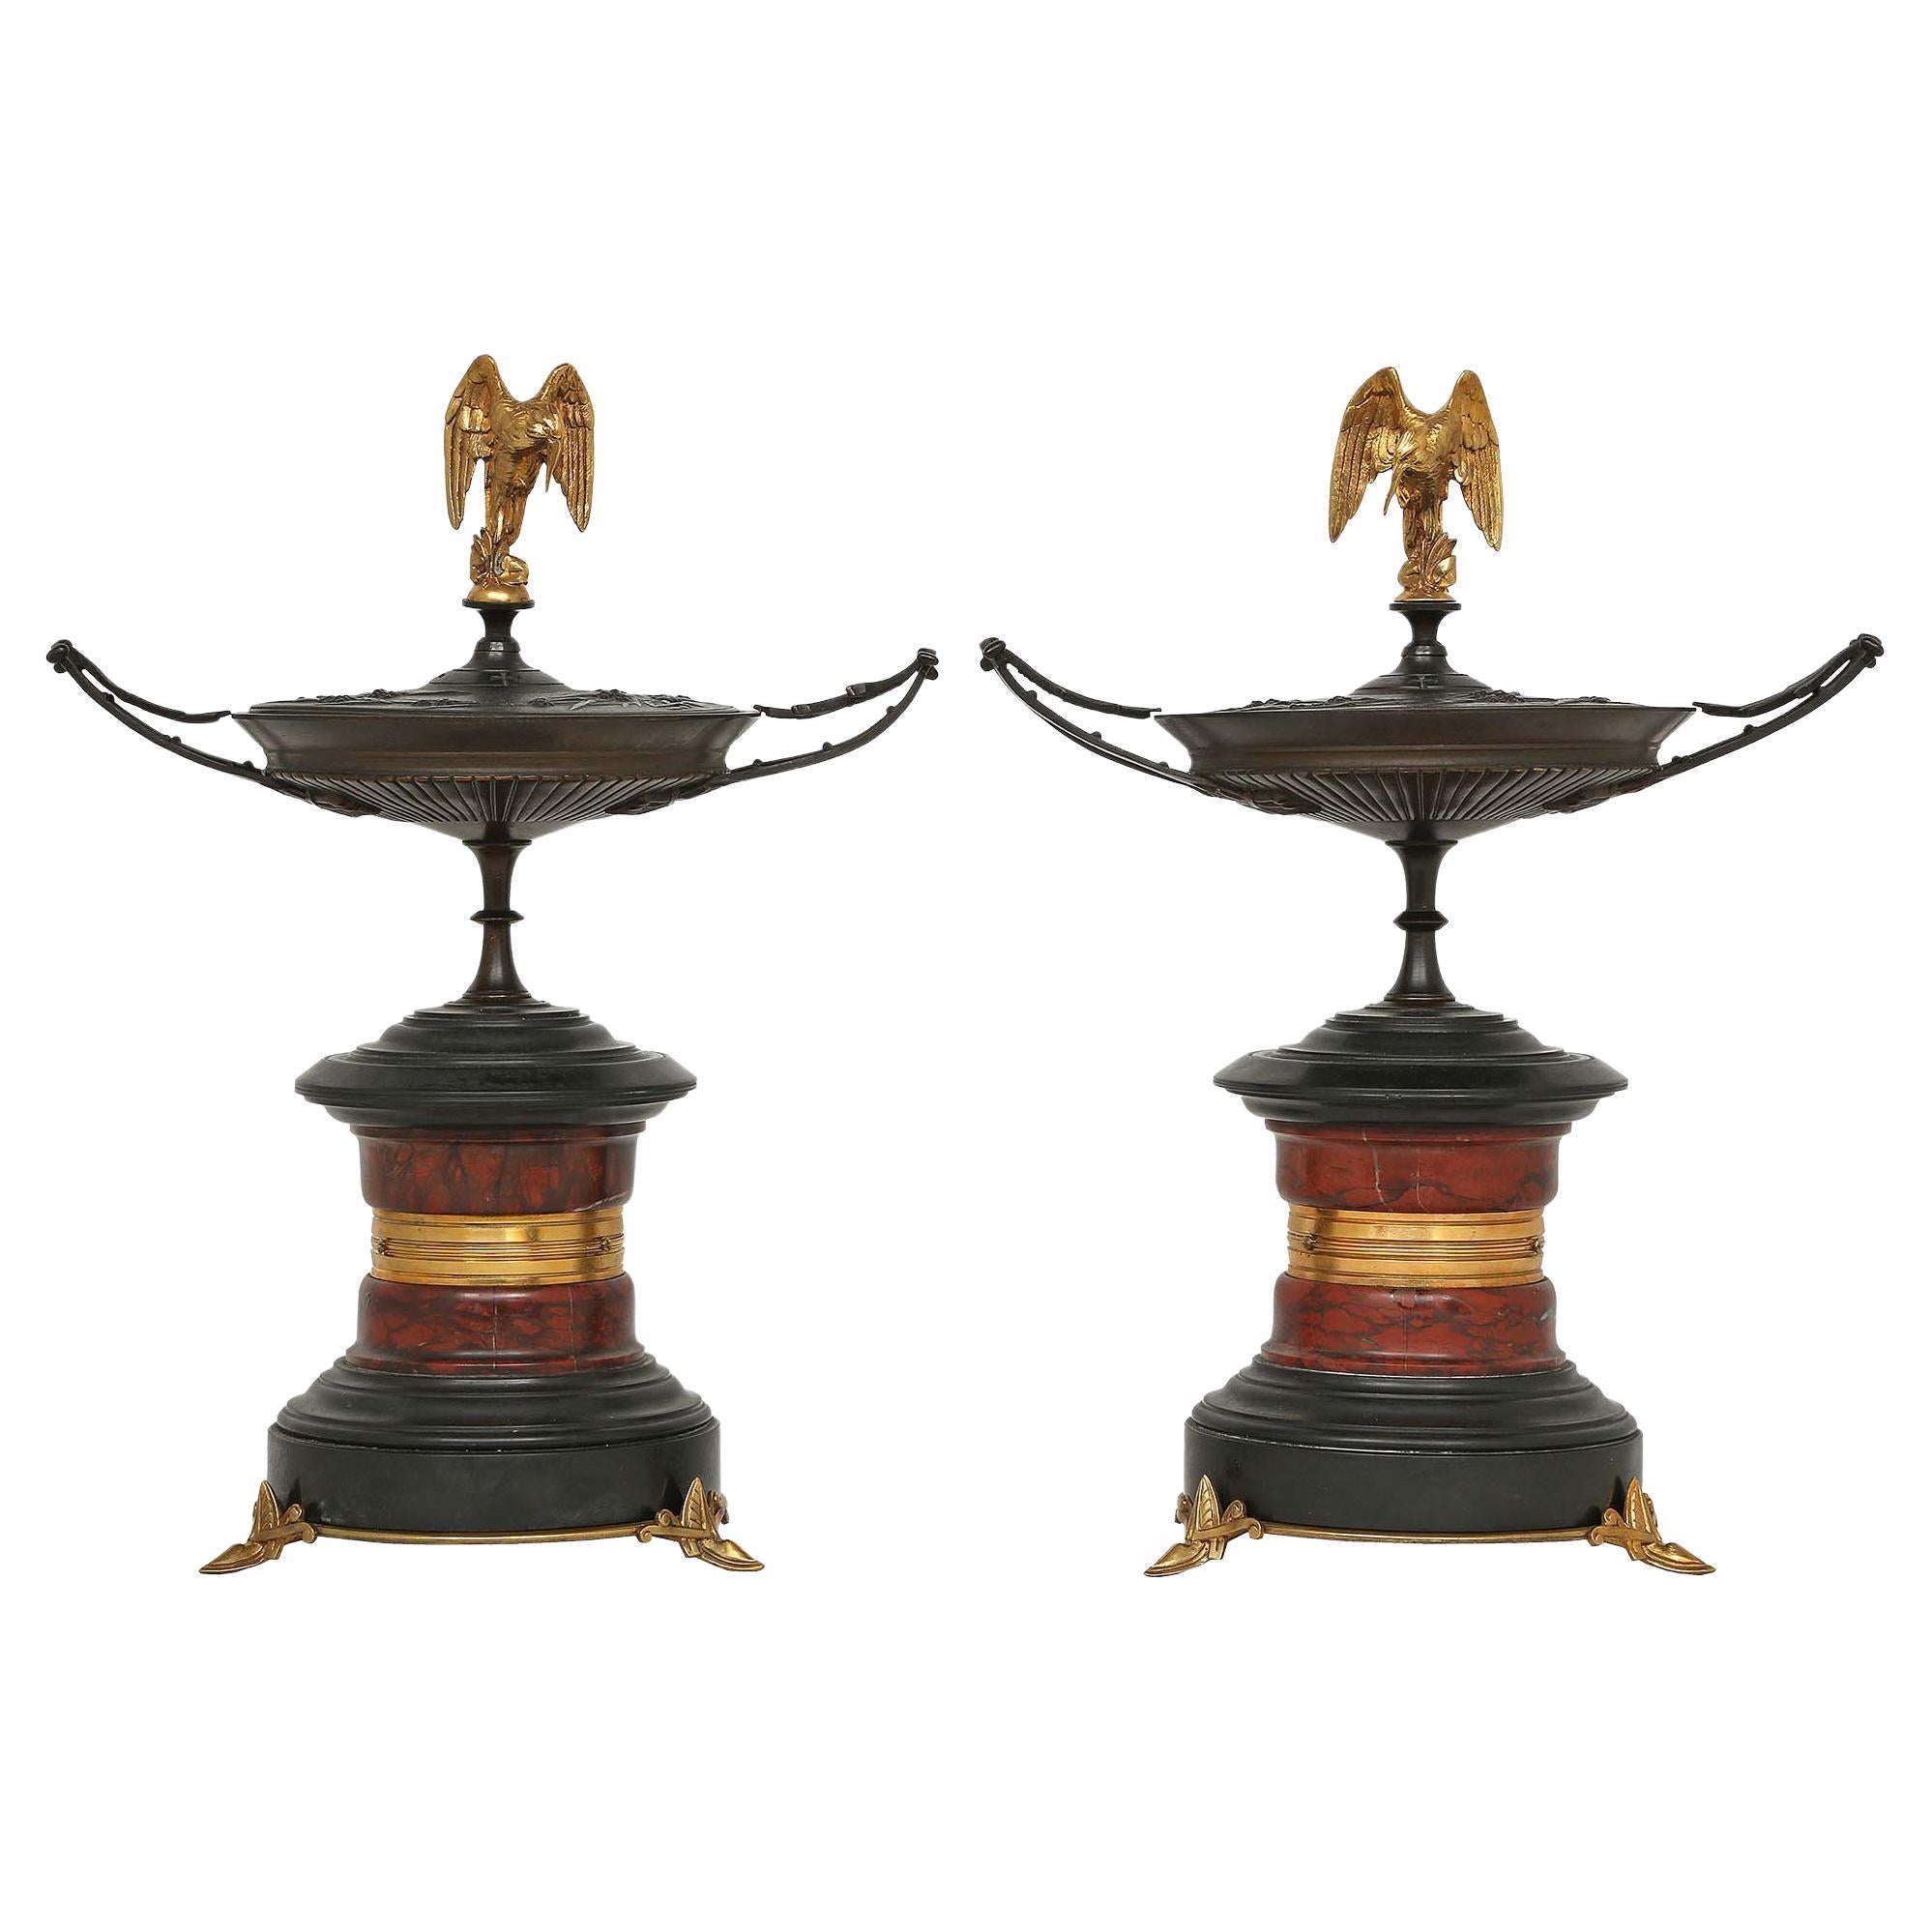 Paar französische Tazzas aus Bronze, Marmor und Goldbronze des 19. Jahrhunderts, mit Deckeln